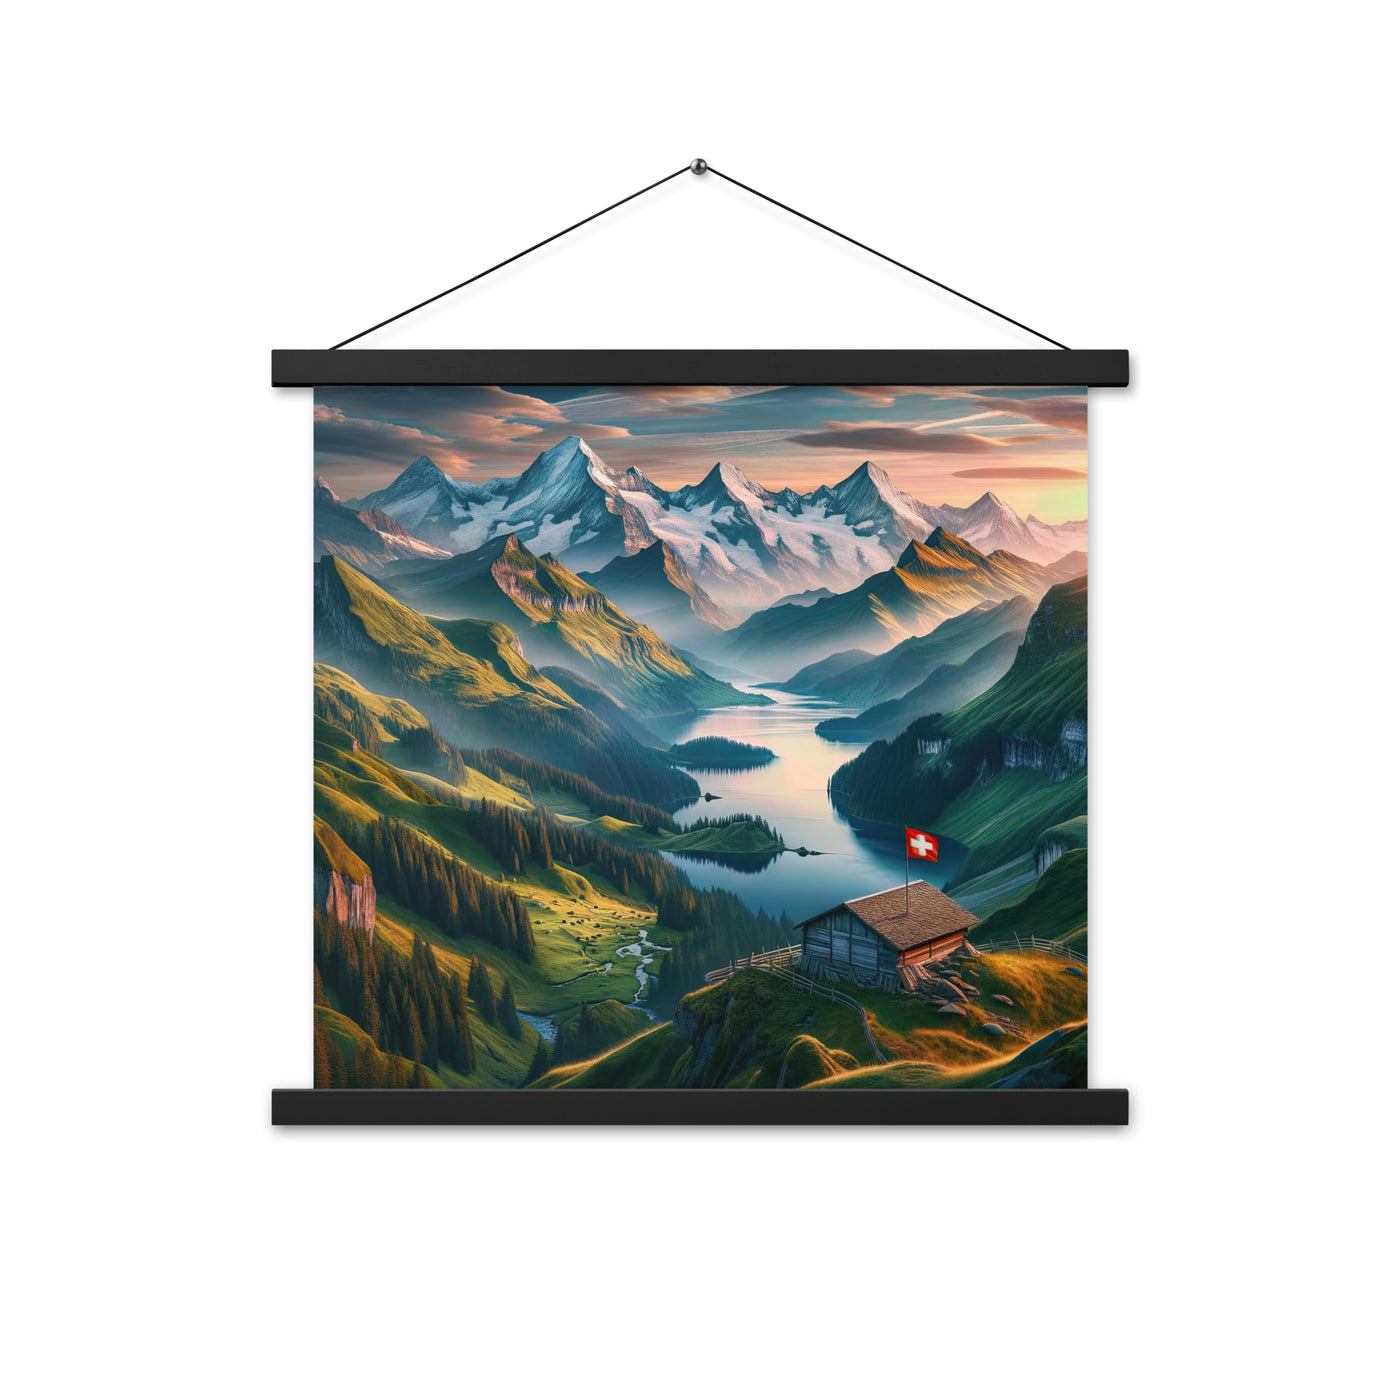 Schweizer Flagge, Alpenidylle: Dämmerlicht, epische Berge und stille Gewässer - Premium Poster mit Aufhängung berge xxx yyy zzz 45.7 x 45.7 cm